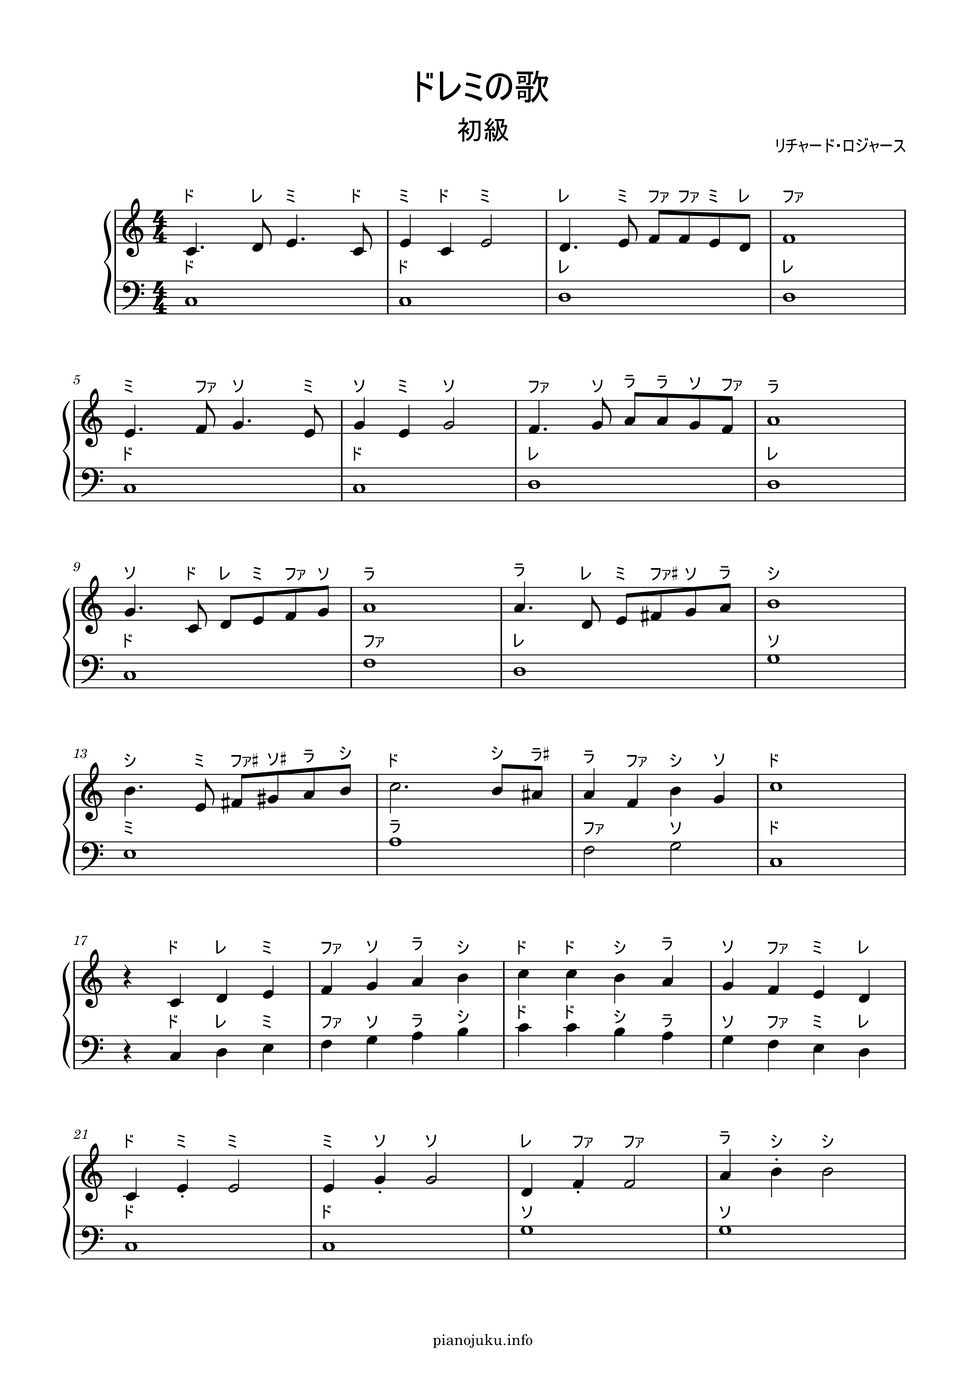 ドレミの歌 (ドレミ付き簡単楽譜) by ピアノ塾